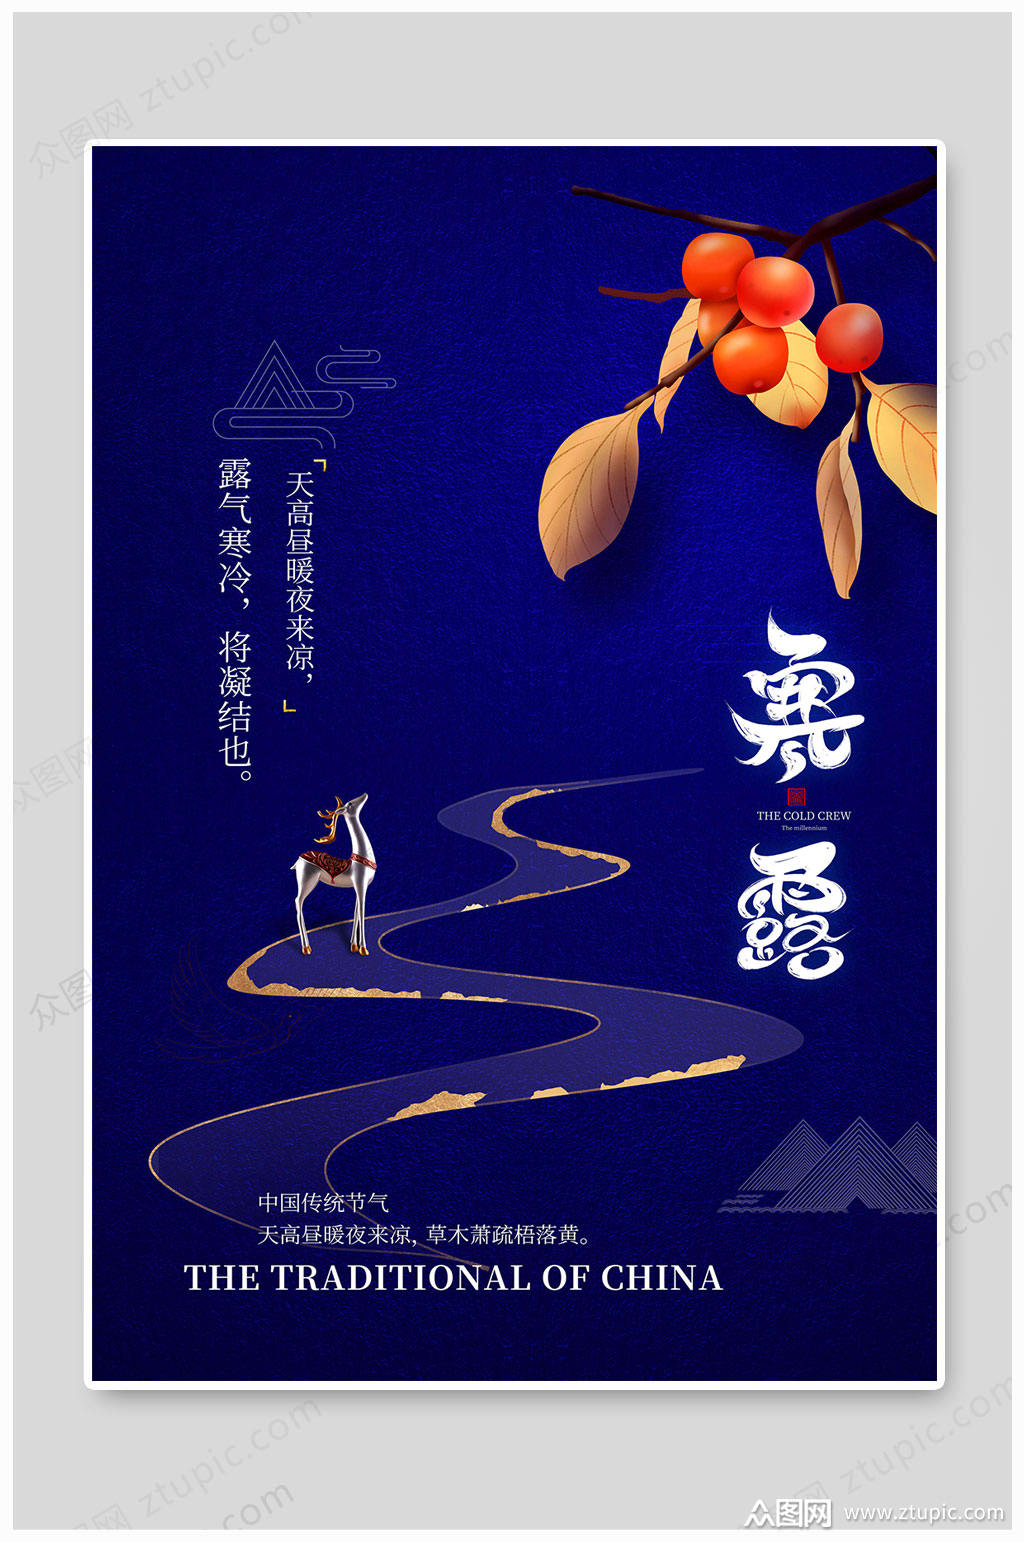 众图网独家提供中国风寒露节气海报素材免费下载,本作品是由长的惊动